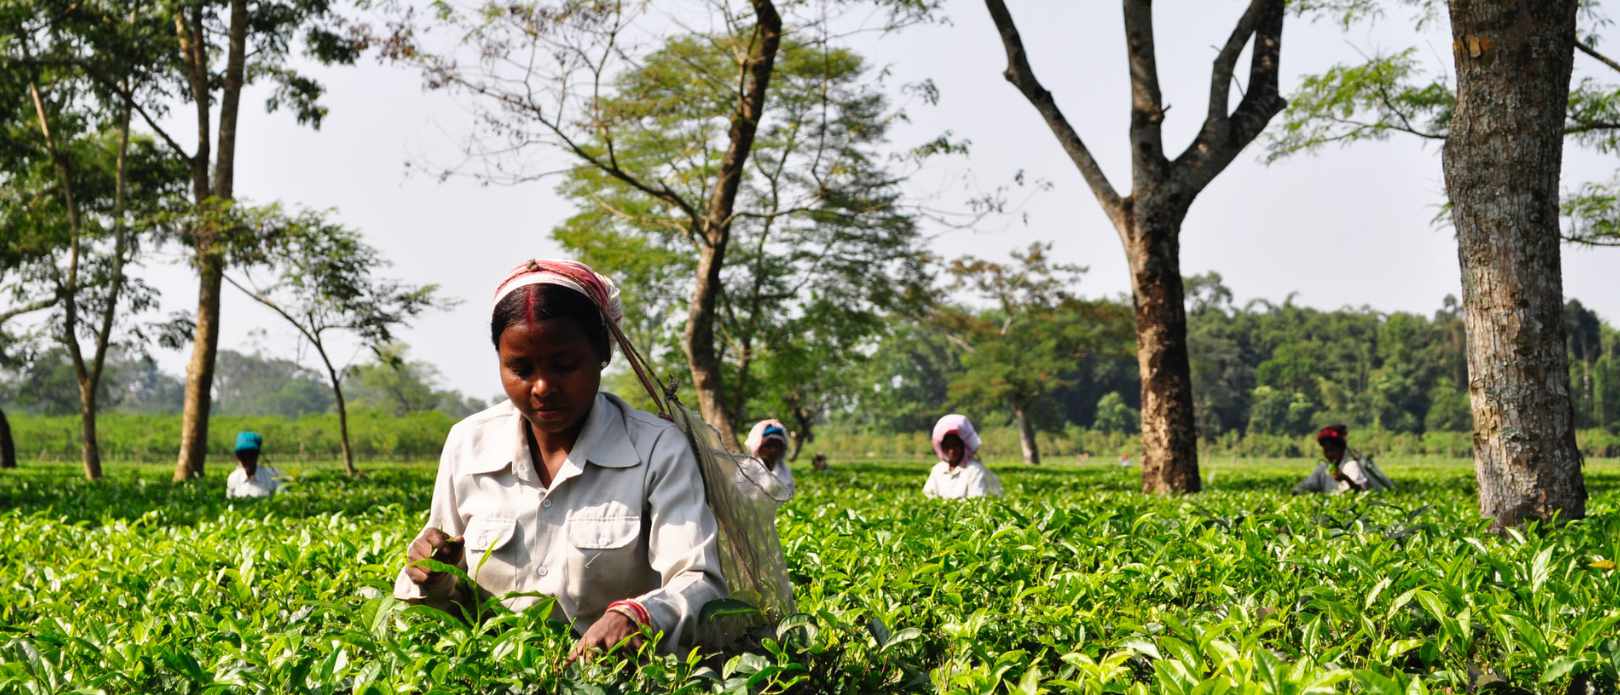 Rural women workers plucking tender tea shoots in tea gardens